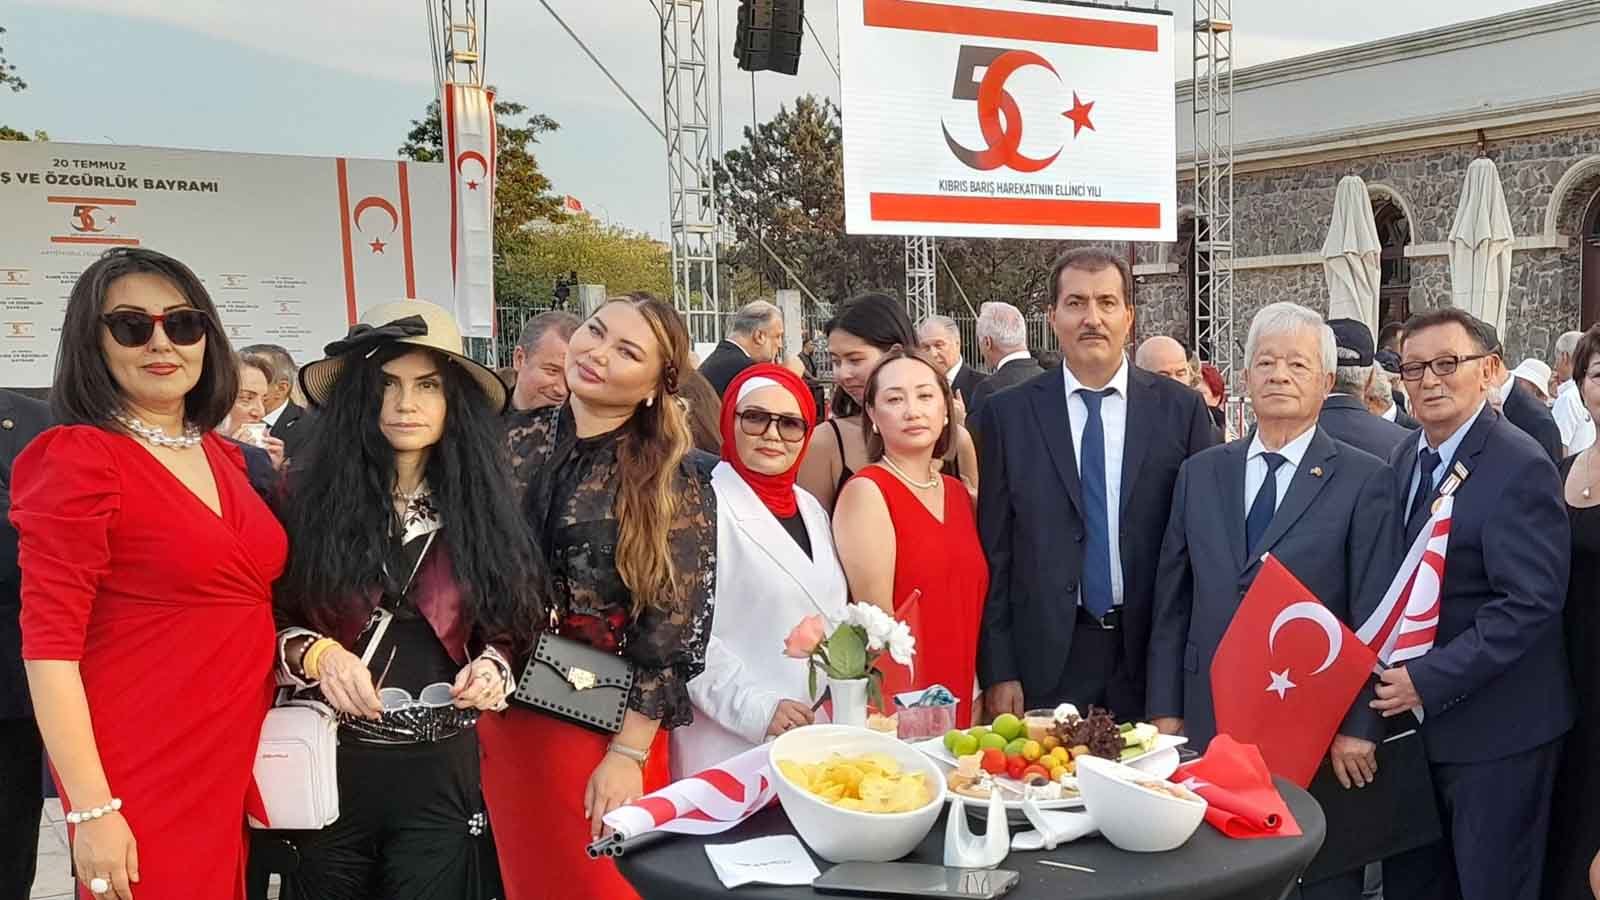 Çiğdem Yorgancıoğlu At Kktc Diplomatic Reception In Feshane